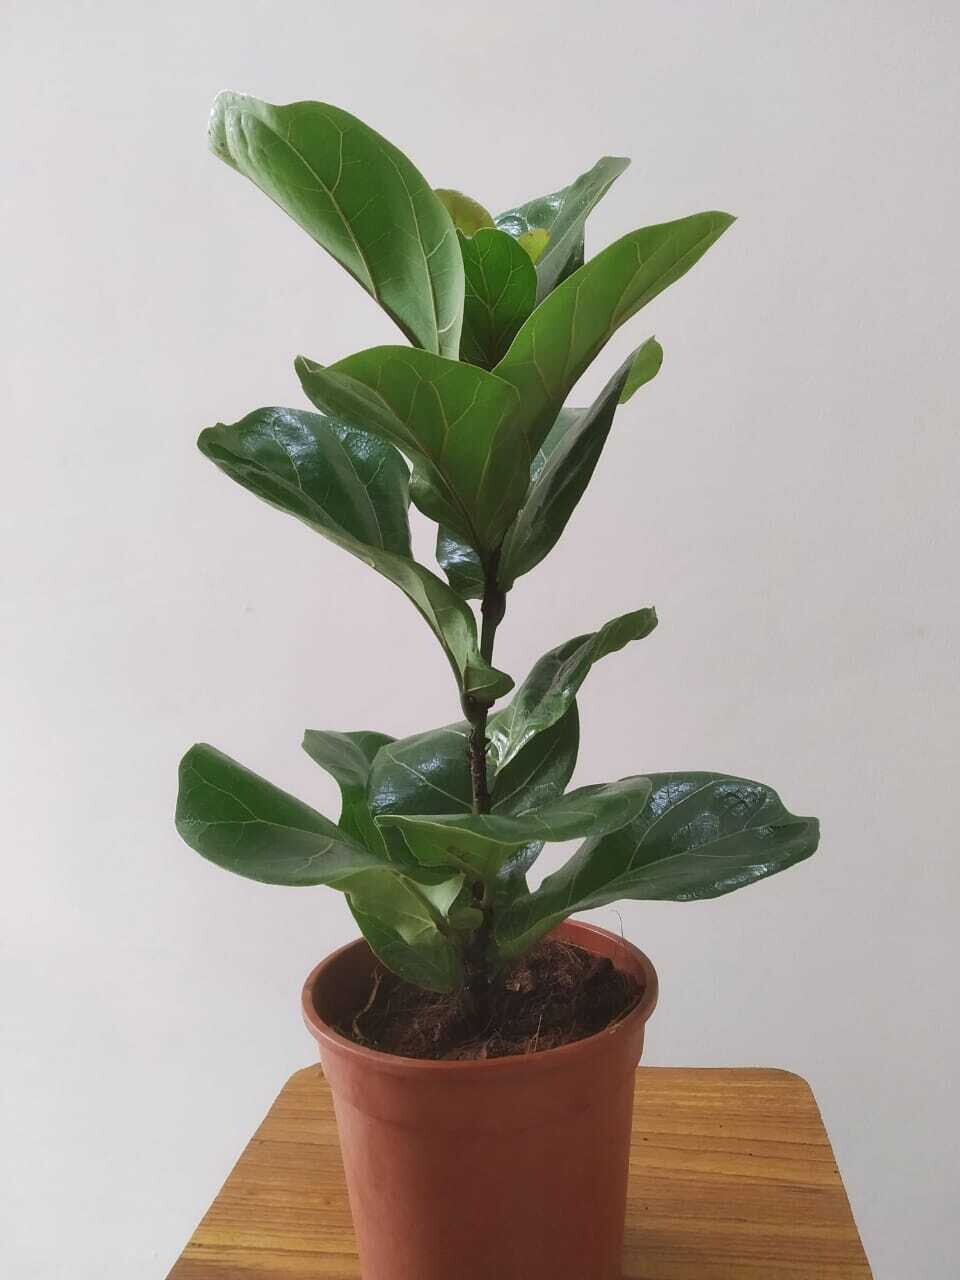 Ficus Lyrata - Fiddle-Leaf Fig in 5 inches Nursery Pot